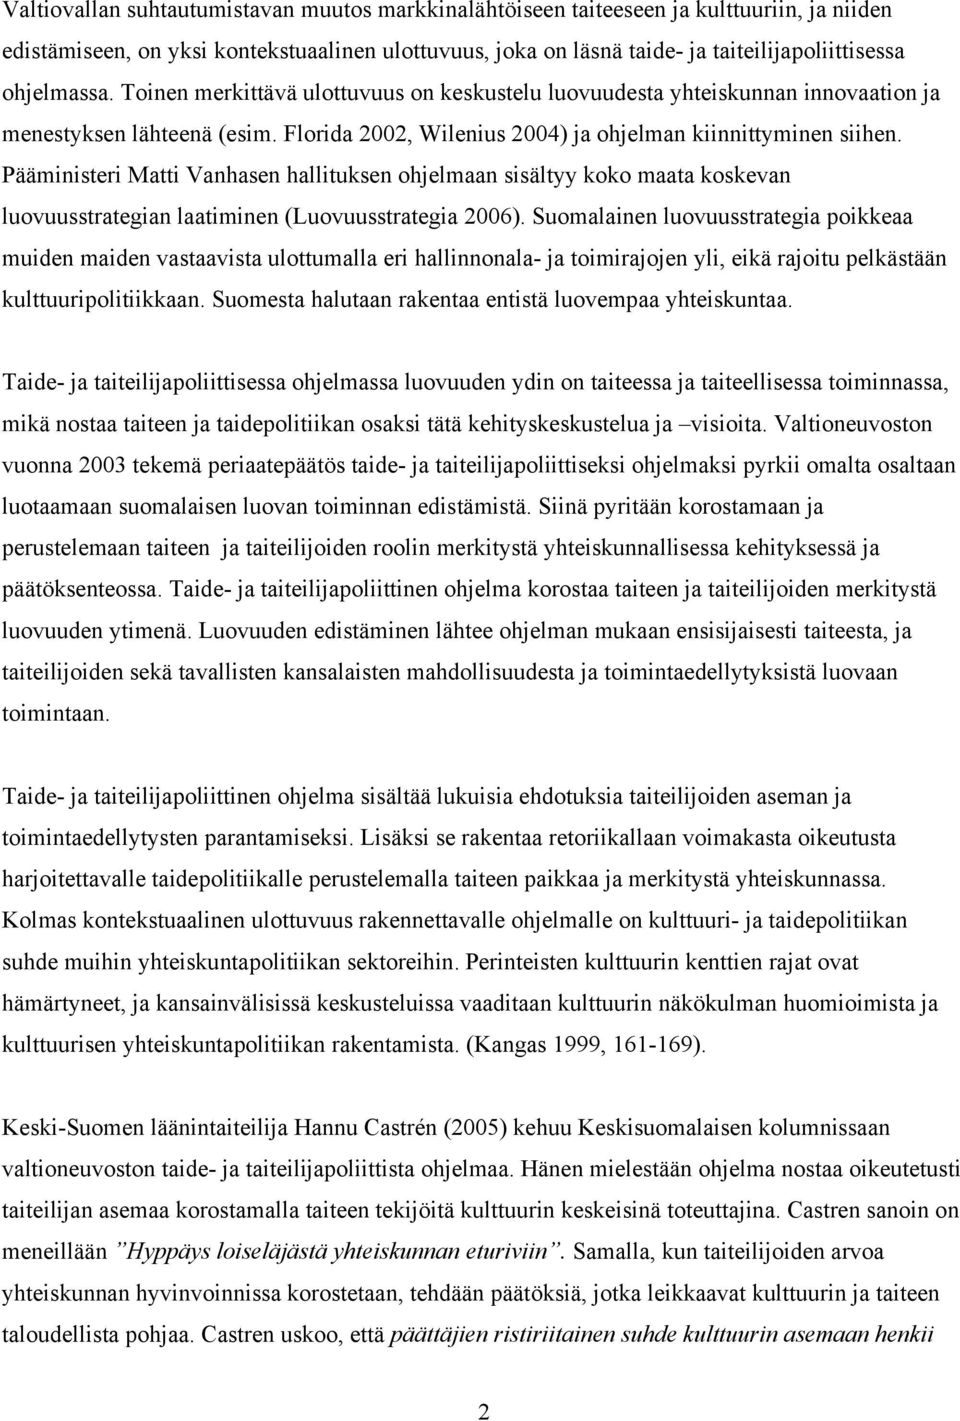 Pääministeri Matti Vanhasen hallituksen ohjelmaan sisältyy koko maata koskevan luovuusstrategian laatiminen (Luovuusstrategia 2006).